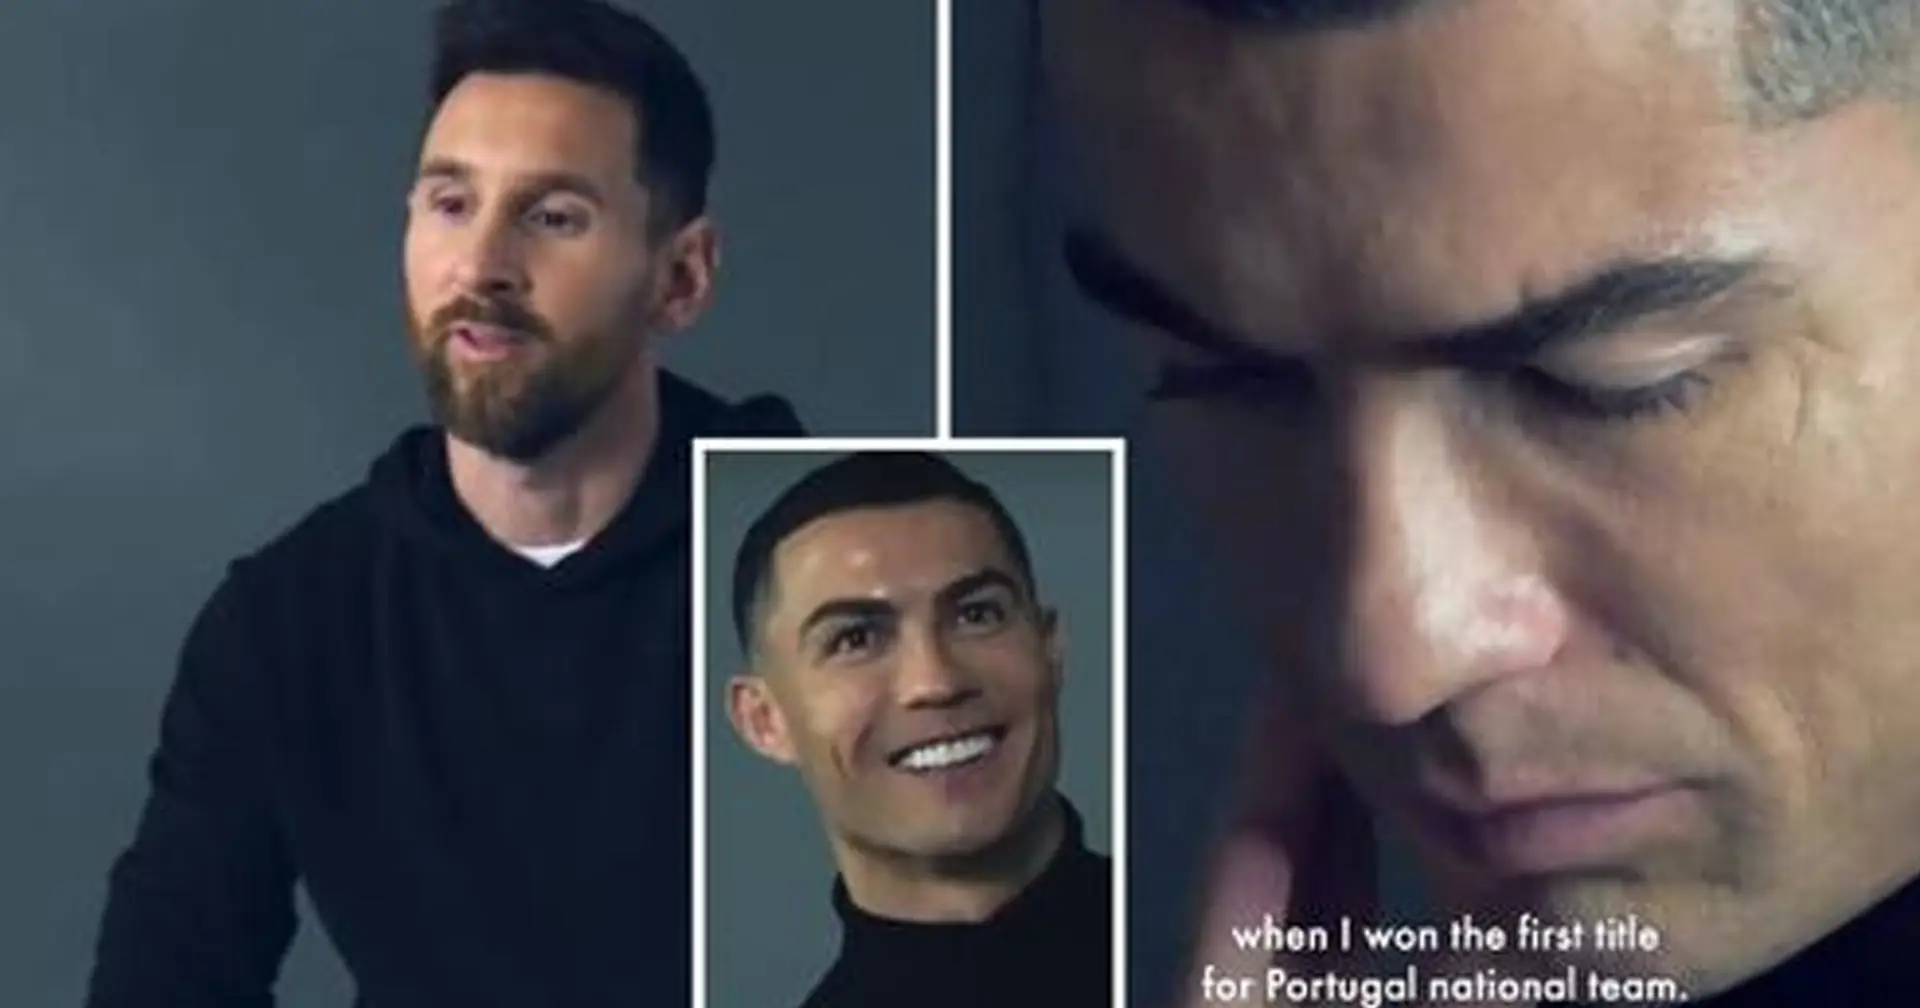 Das ist der Unterschied: Als Messi und Ronaldo gefragt wurden, was Sieg für sie bedeutet, gaben sie sehr unterschiedliche Antworten